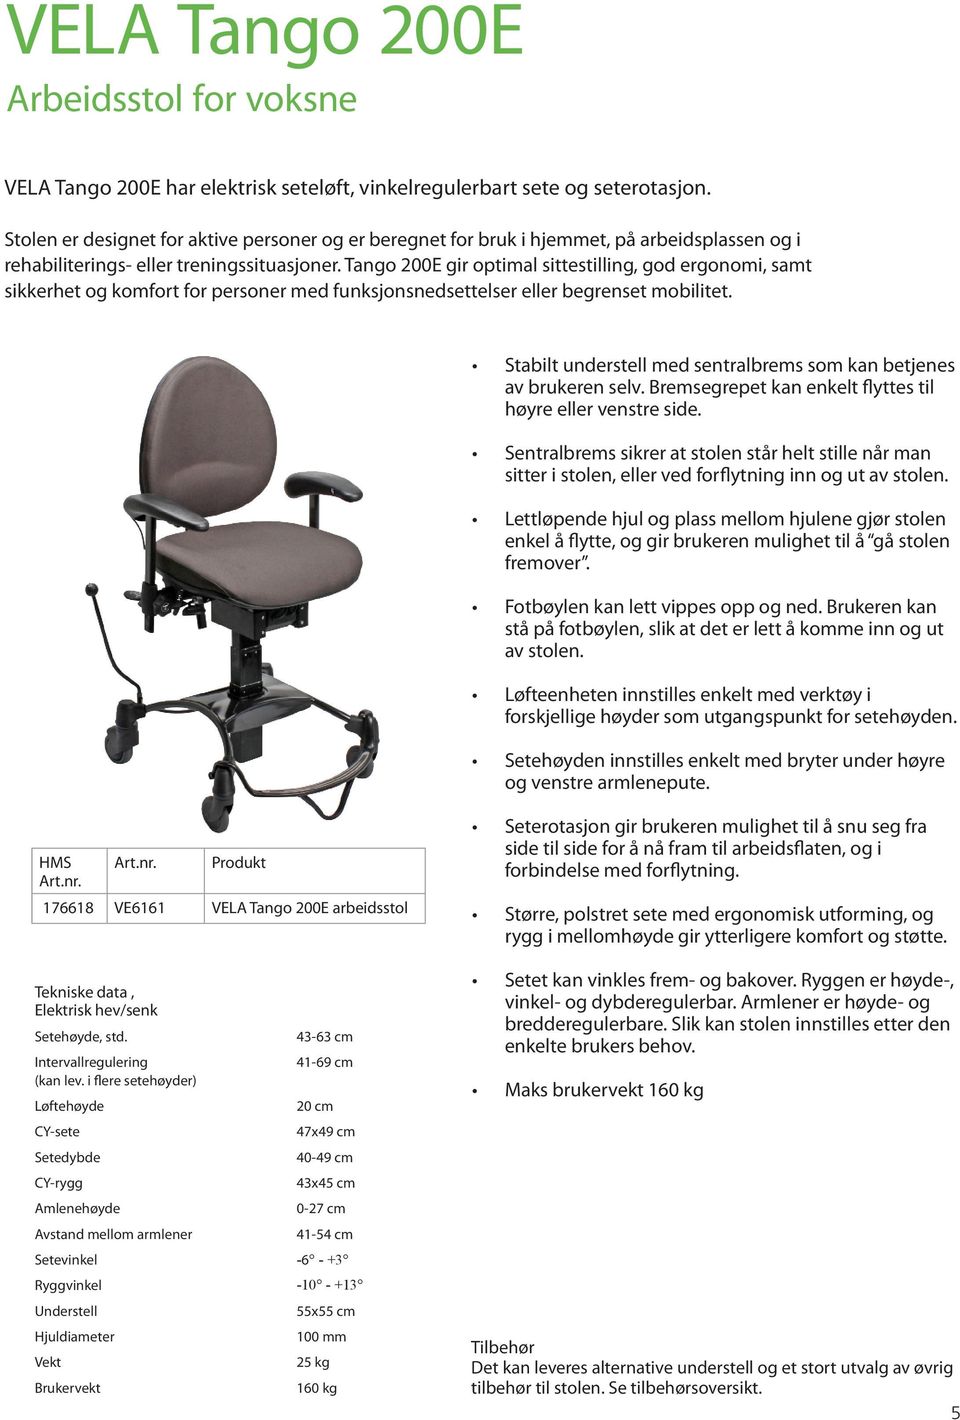 Tango 200E gir optimal sittestilling, god ergonomi, samt sikkerhet og komfort for personer med funksjonsnedsettelser eller begrenset mobilitet.